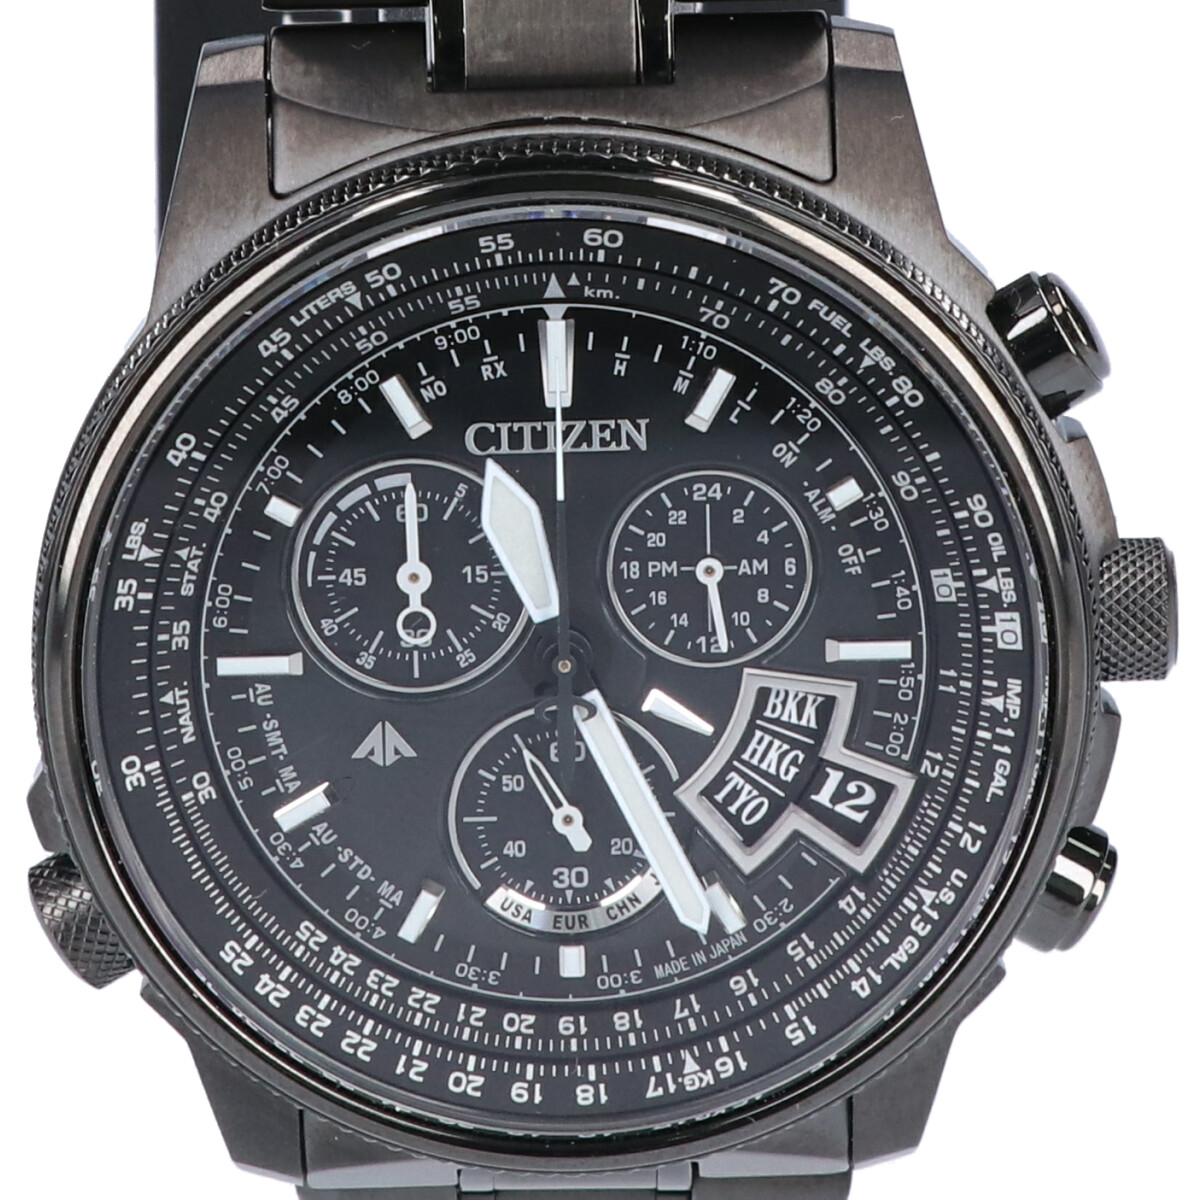 シチズンのBY0084-56E プロマスター スーパーチタニウム エコドライブ 電波腕時計の買取実績です。